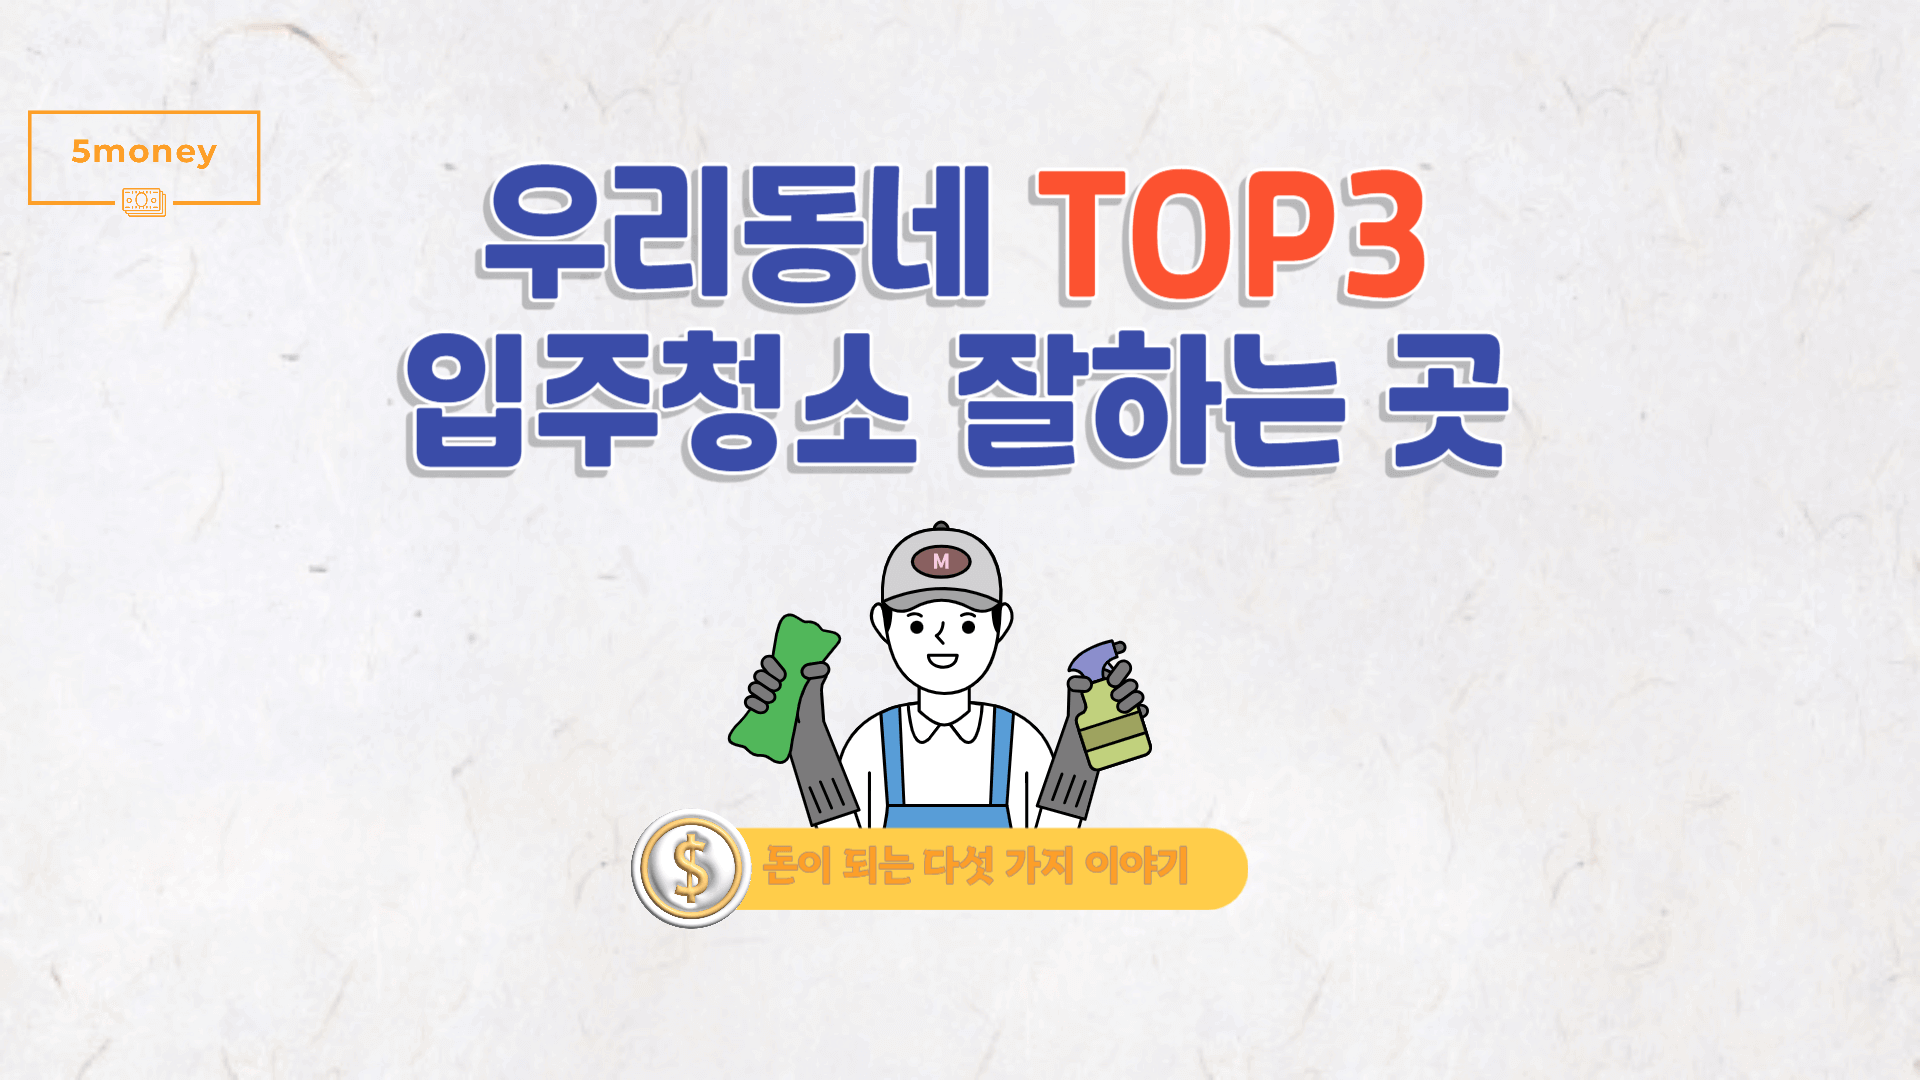 [충청남도 홍성군] 입주청소 잘하는 곳 TOP3, 평수별 가격비교(추가비용, 후기)